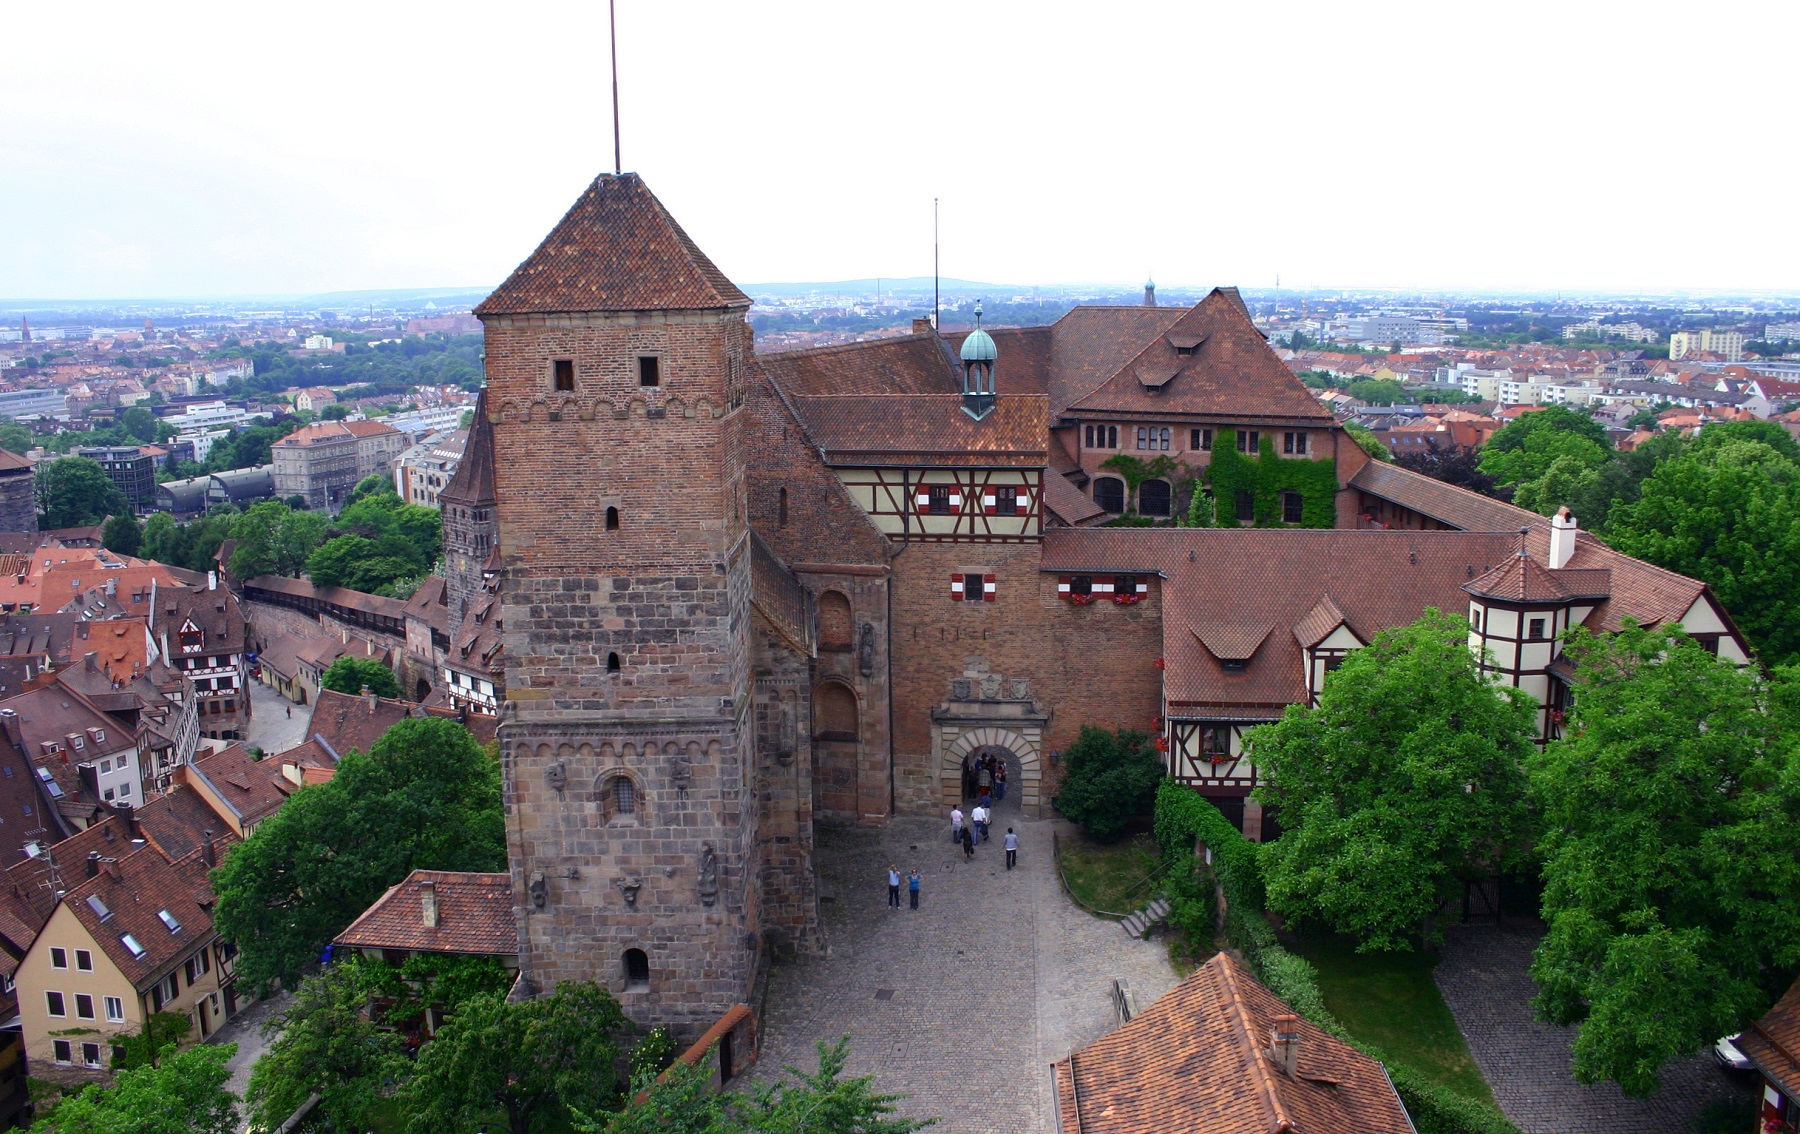 Imperial Castle, Nuremberg